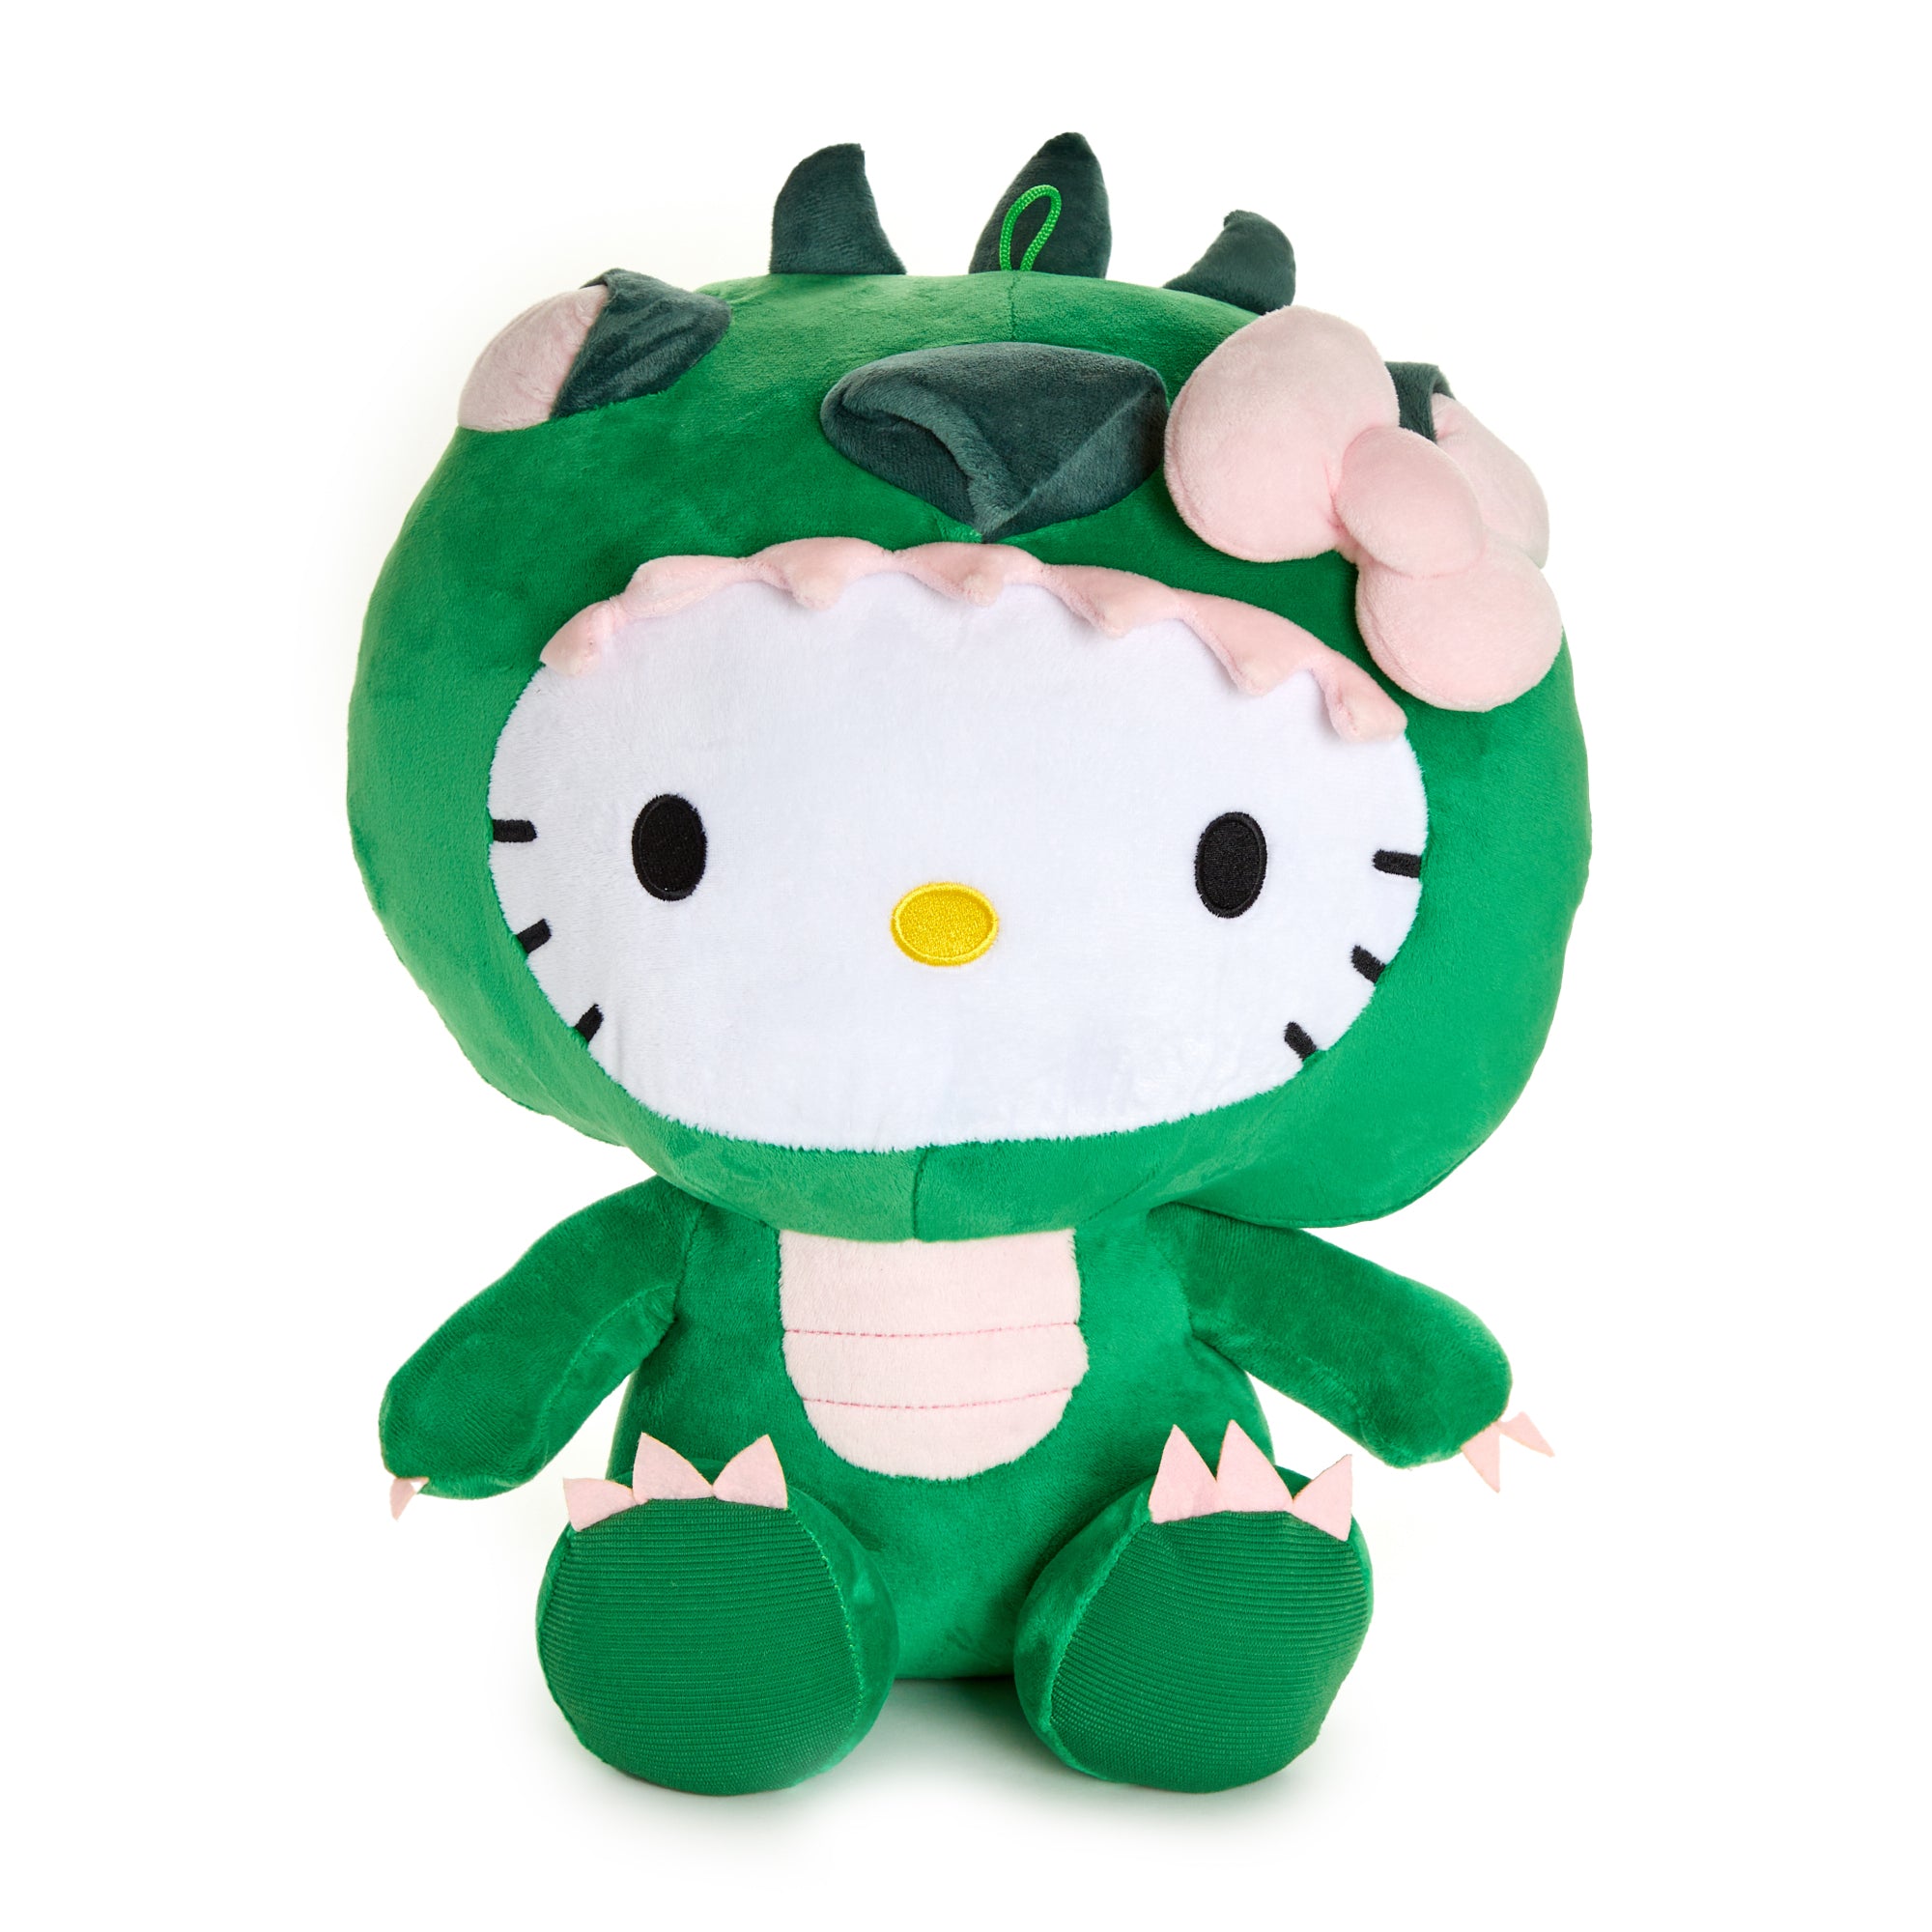  GUND Sanrio Hello Kitty Keroppi Plush Stuffed Animal, 6 : Toys  & Games